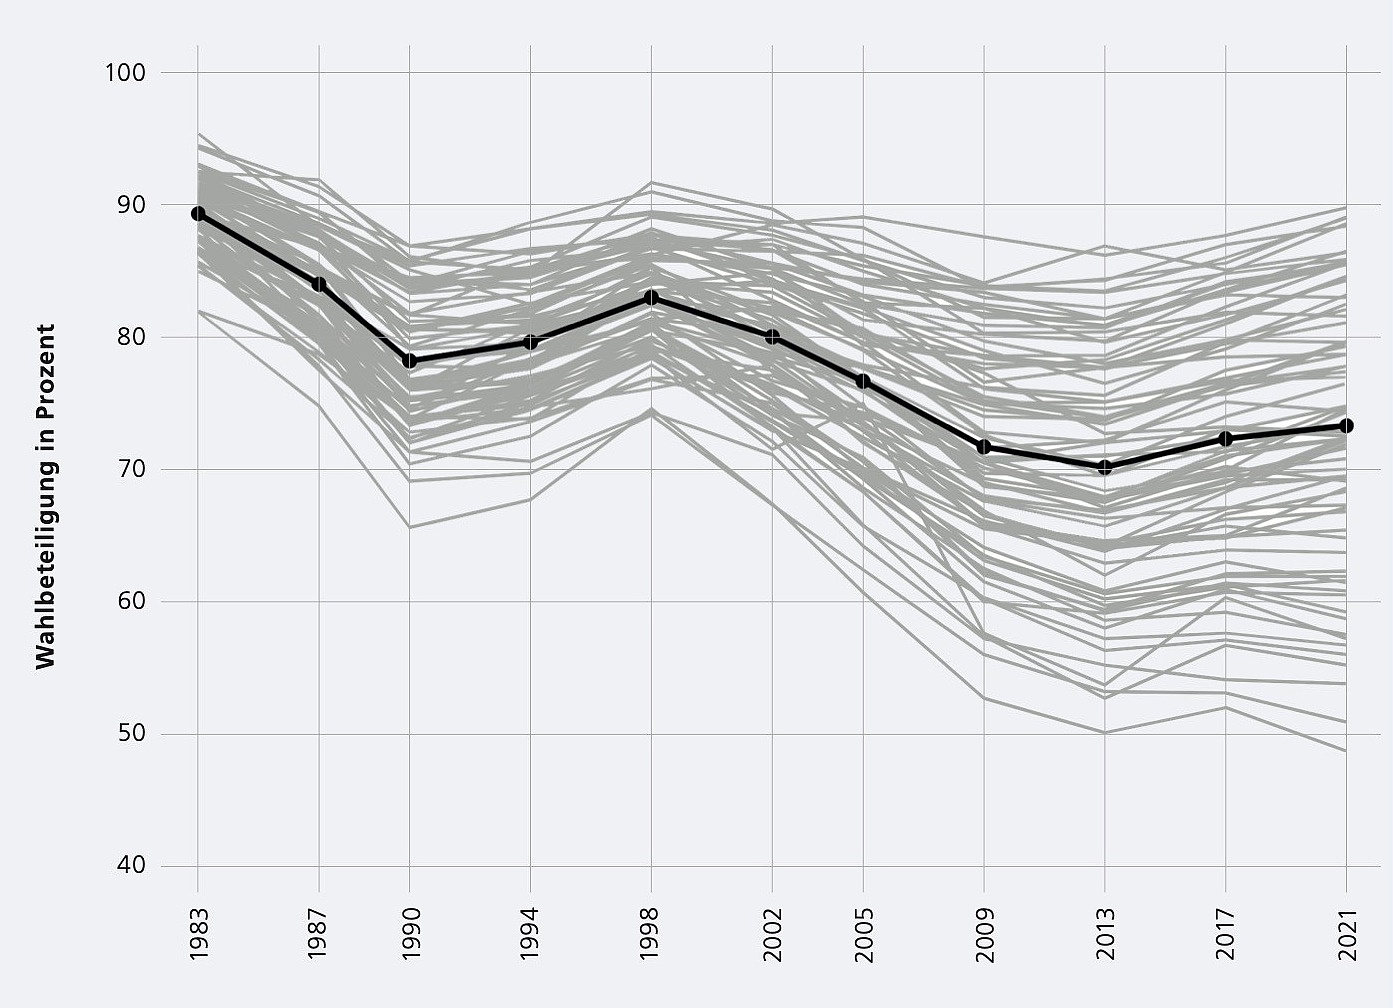 Dastellung der Wahlbeteiligung in Prozent auf dre Zeitachse von 1983 bis 2021